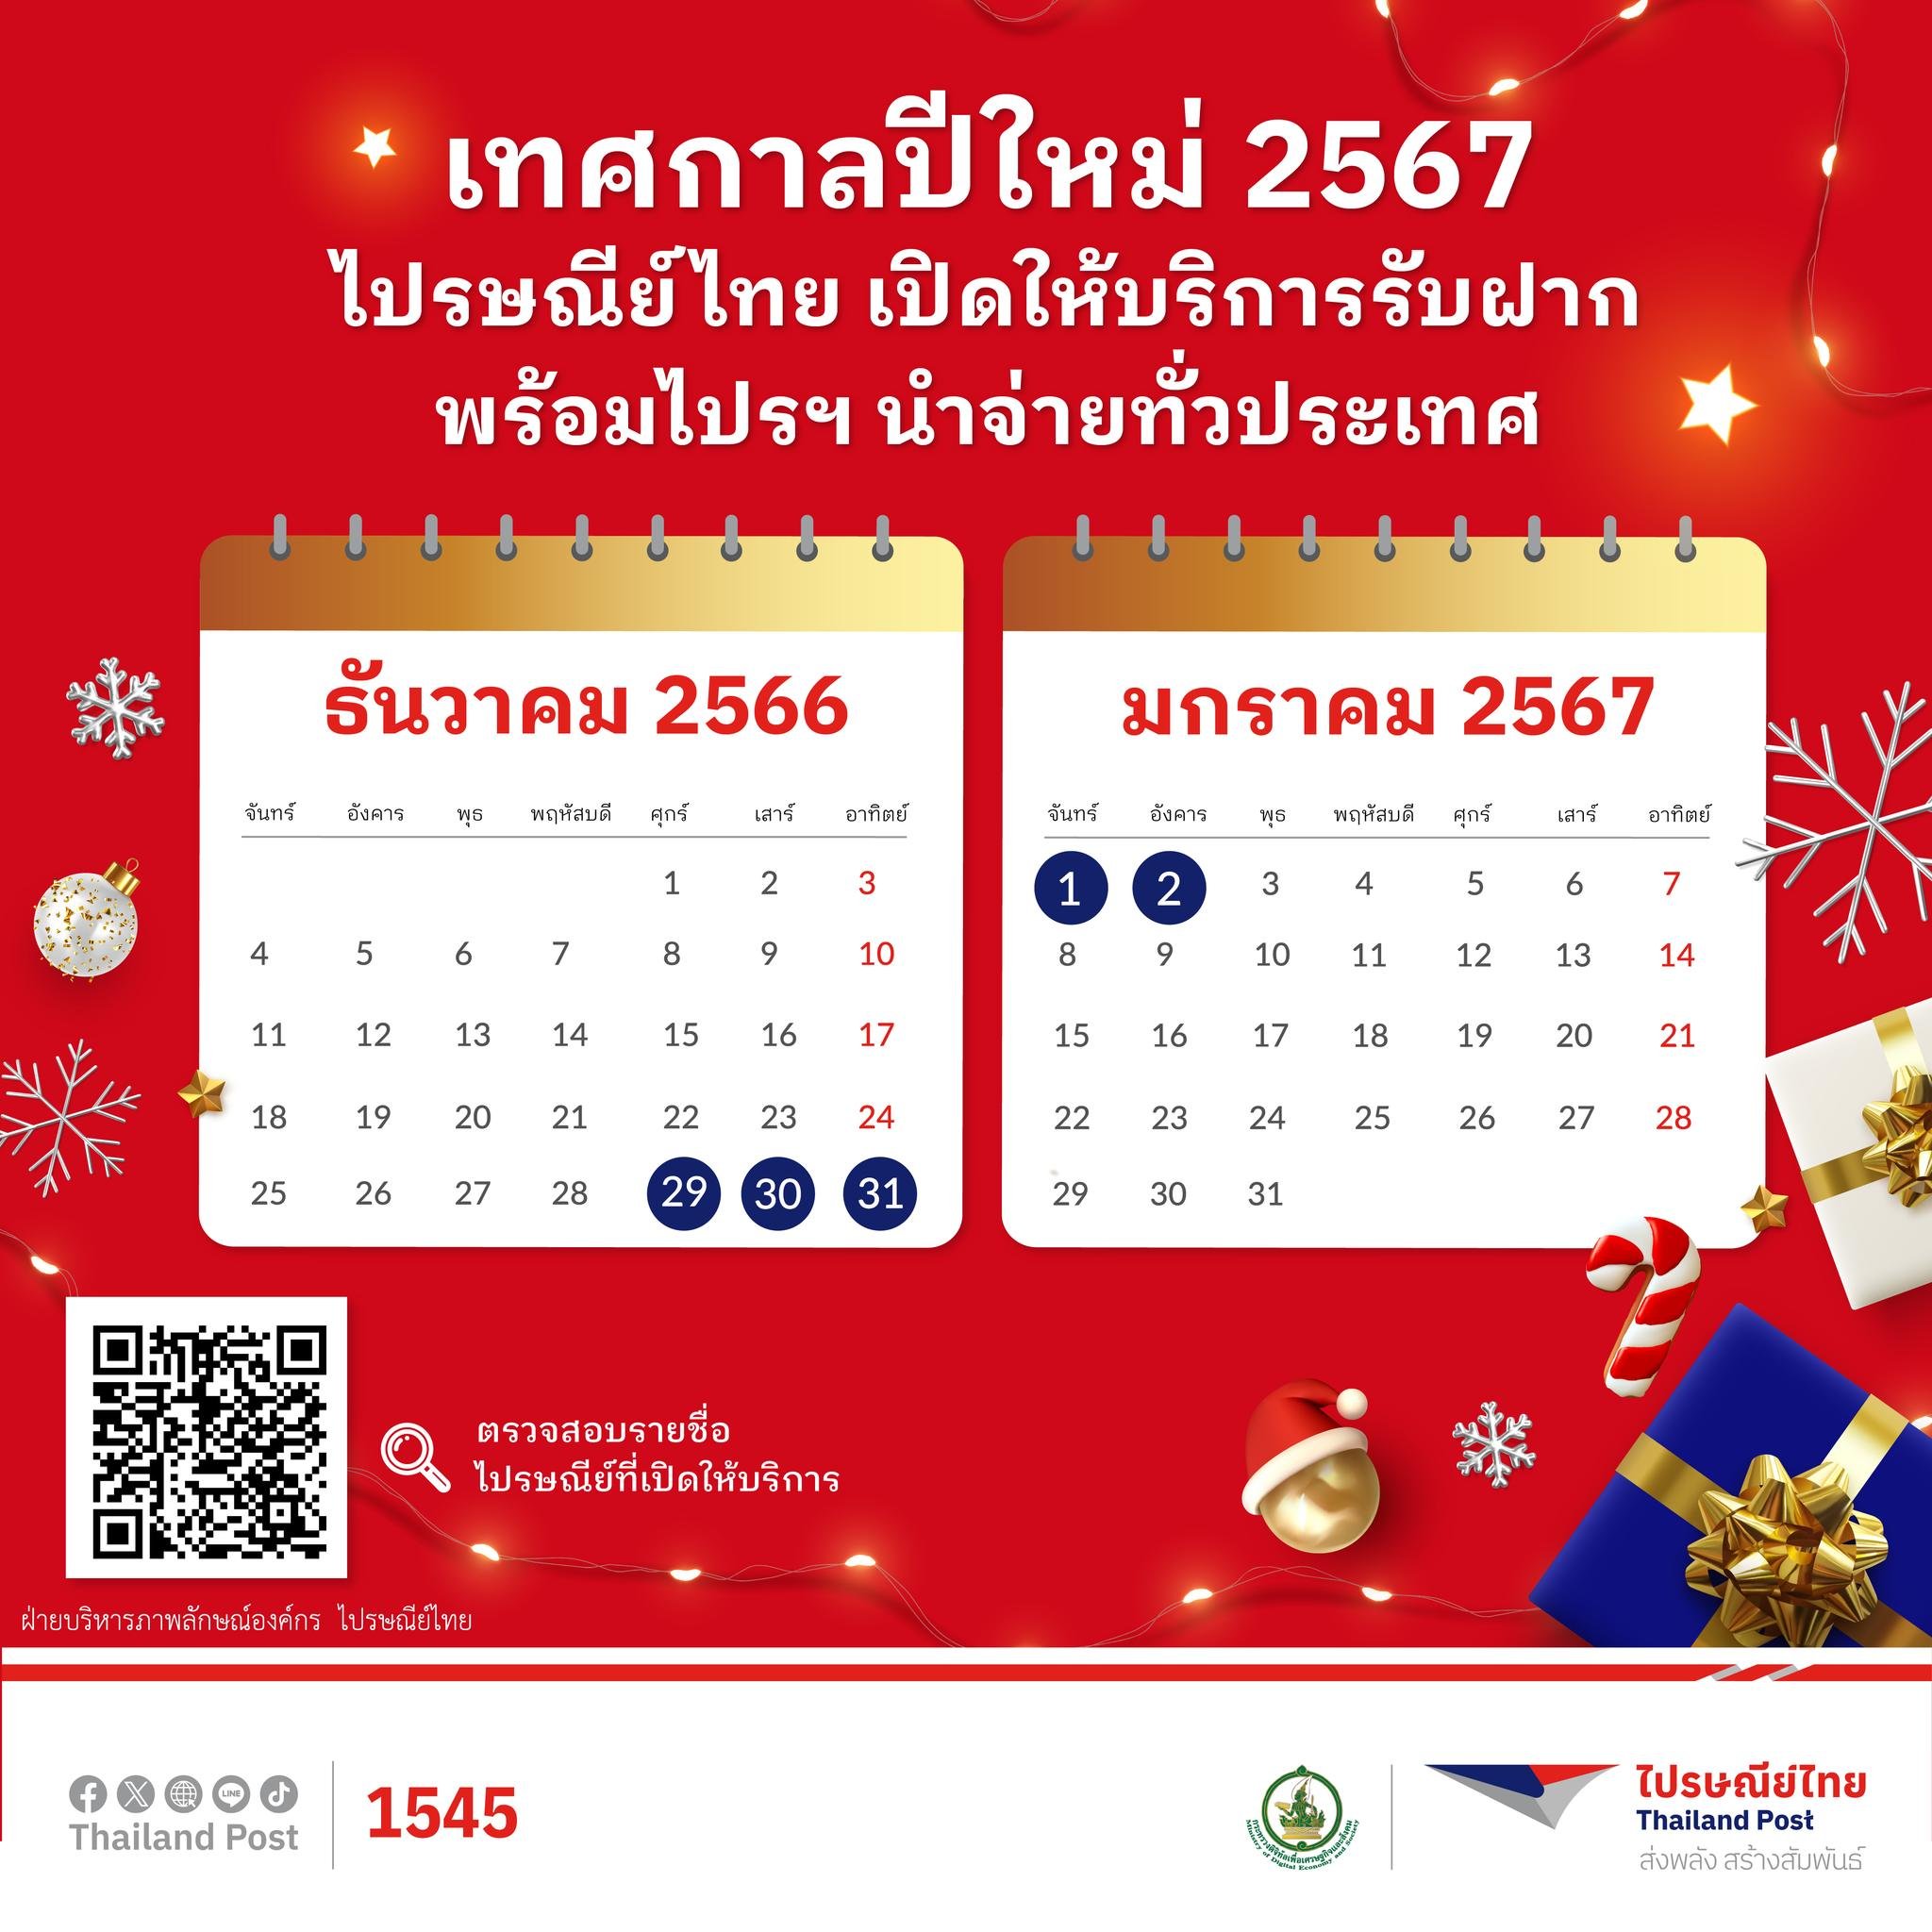 ไปรษณีย์ไทย ไม่หยุด ปีใหม่ 2567